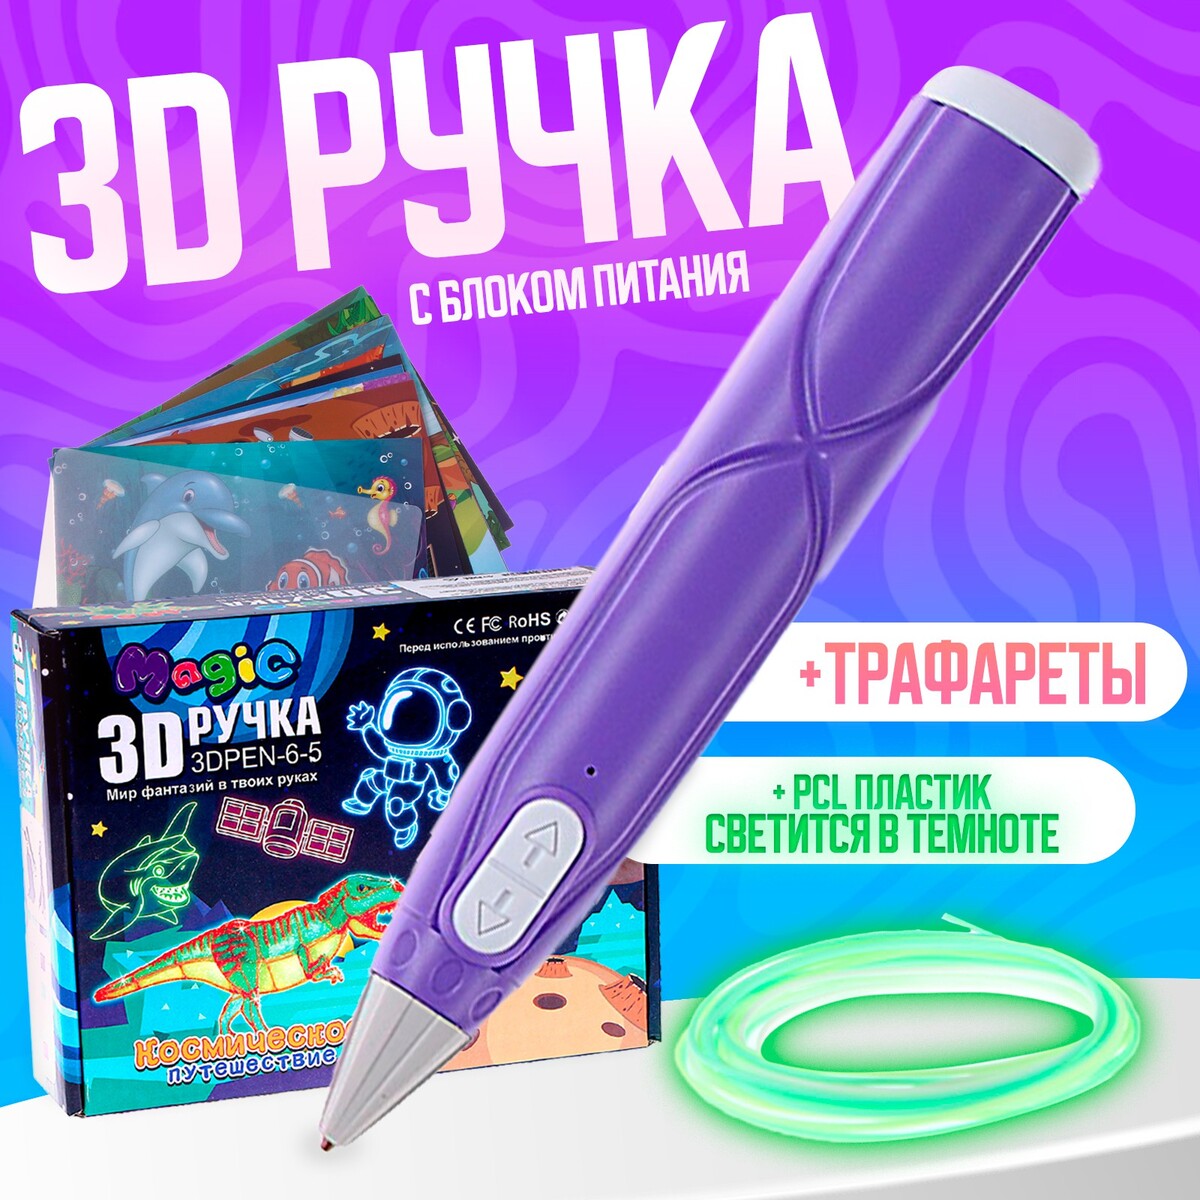 3d ручка, набор pcl пластика светящегося в темноте, мод. pn014, цвет фиолетовый набор сумок в роддом 3 шт ной пвх фиолетовый